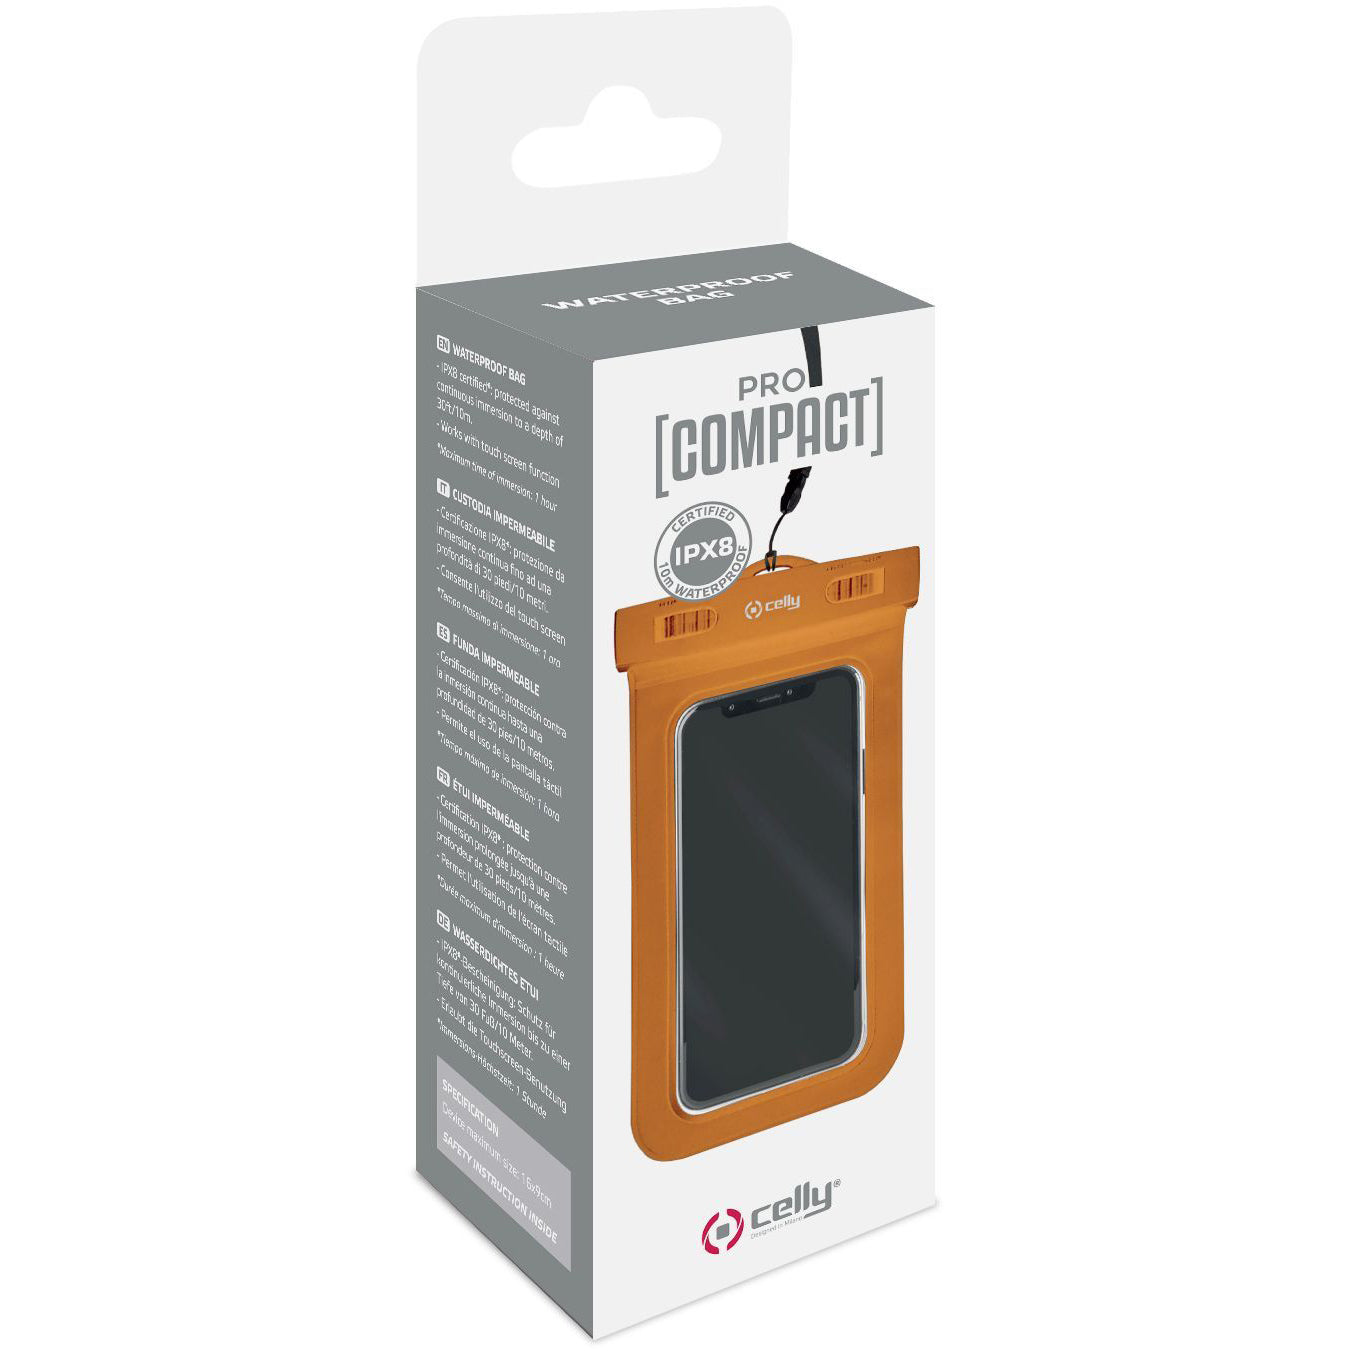 Verpakking van beschermhoes voor smartphone ProCompact van Celly